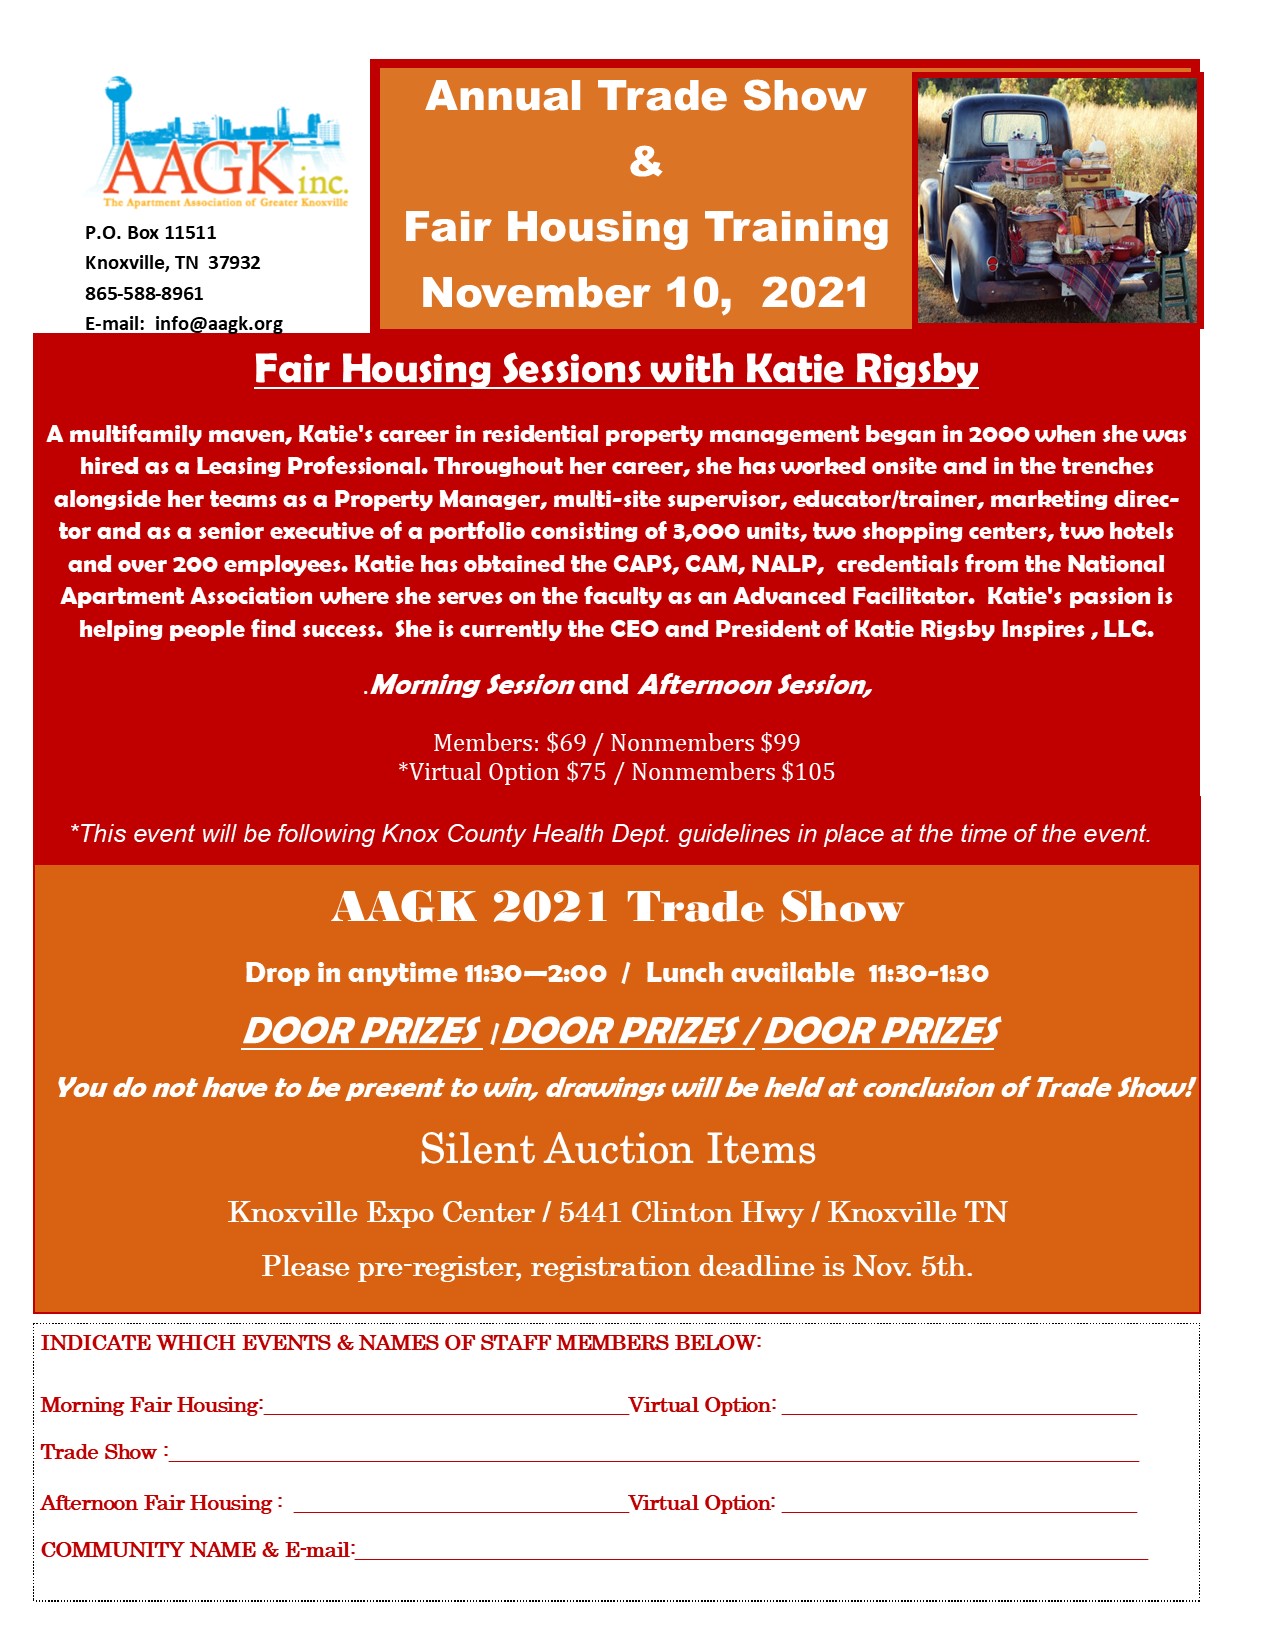 AAGK Annual Fair Housing Training